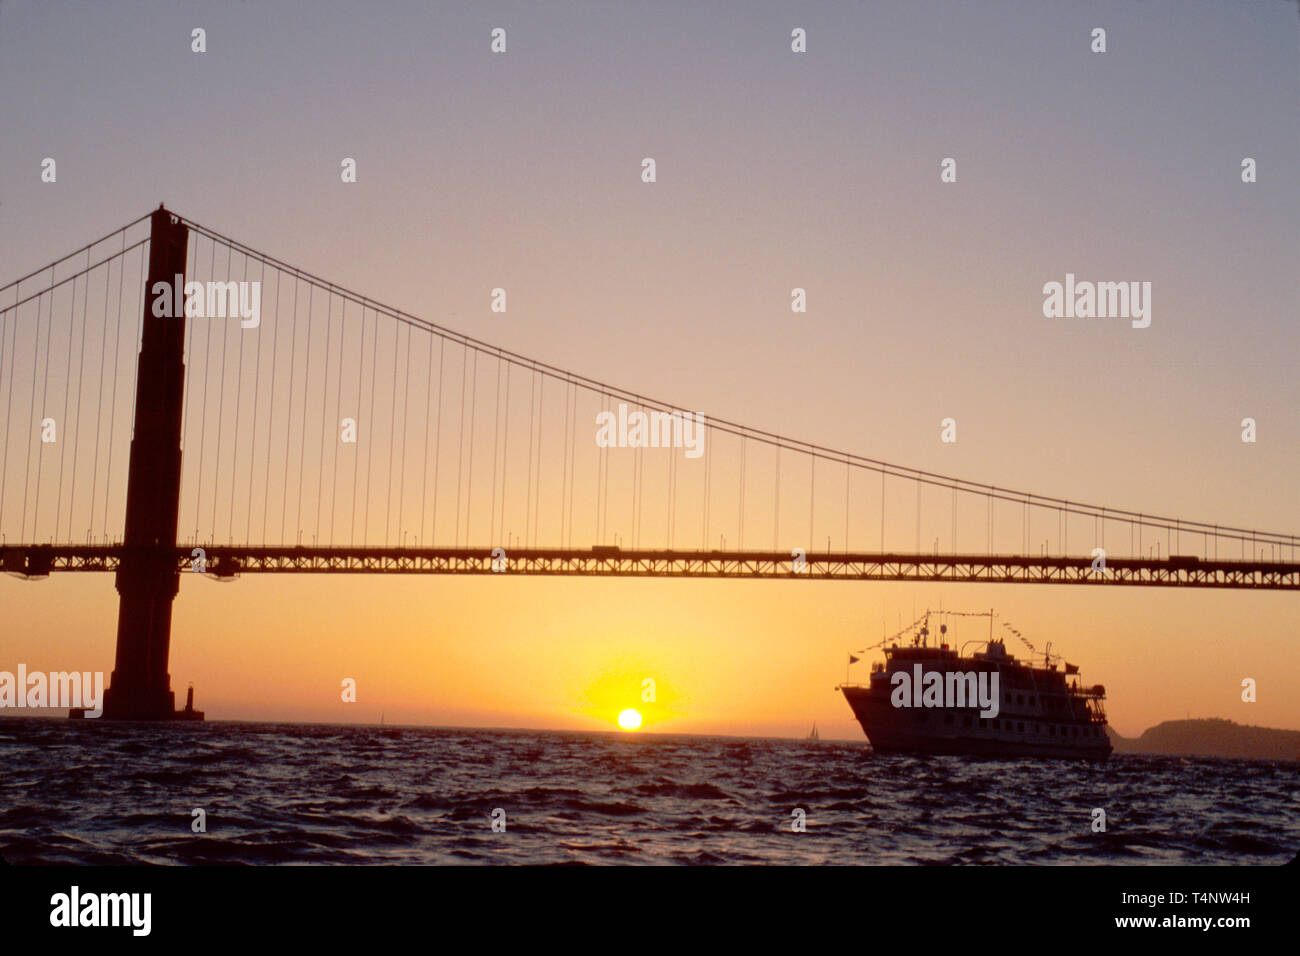 California San Francisco San Francisco Bay Golden Gate Bridge,pont,pont,liaison,connexion,Spirit of Discovery bateau de croisière,bateau de passagers,bateau,bateau,bateau,tran Banque D'Images